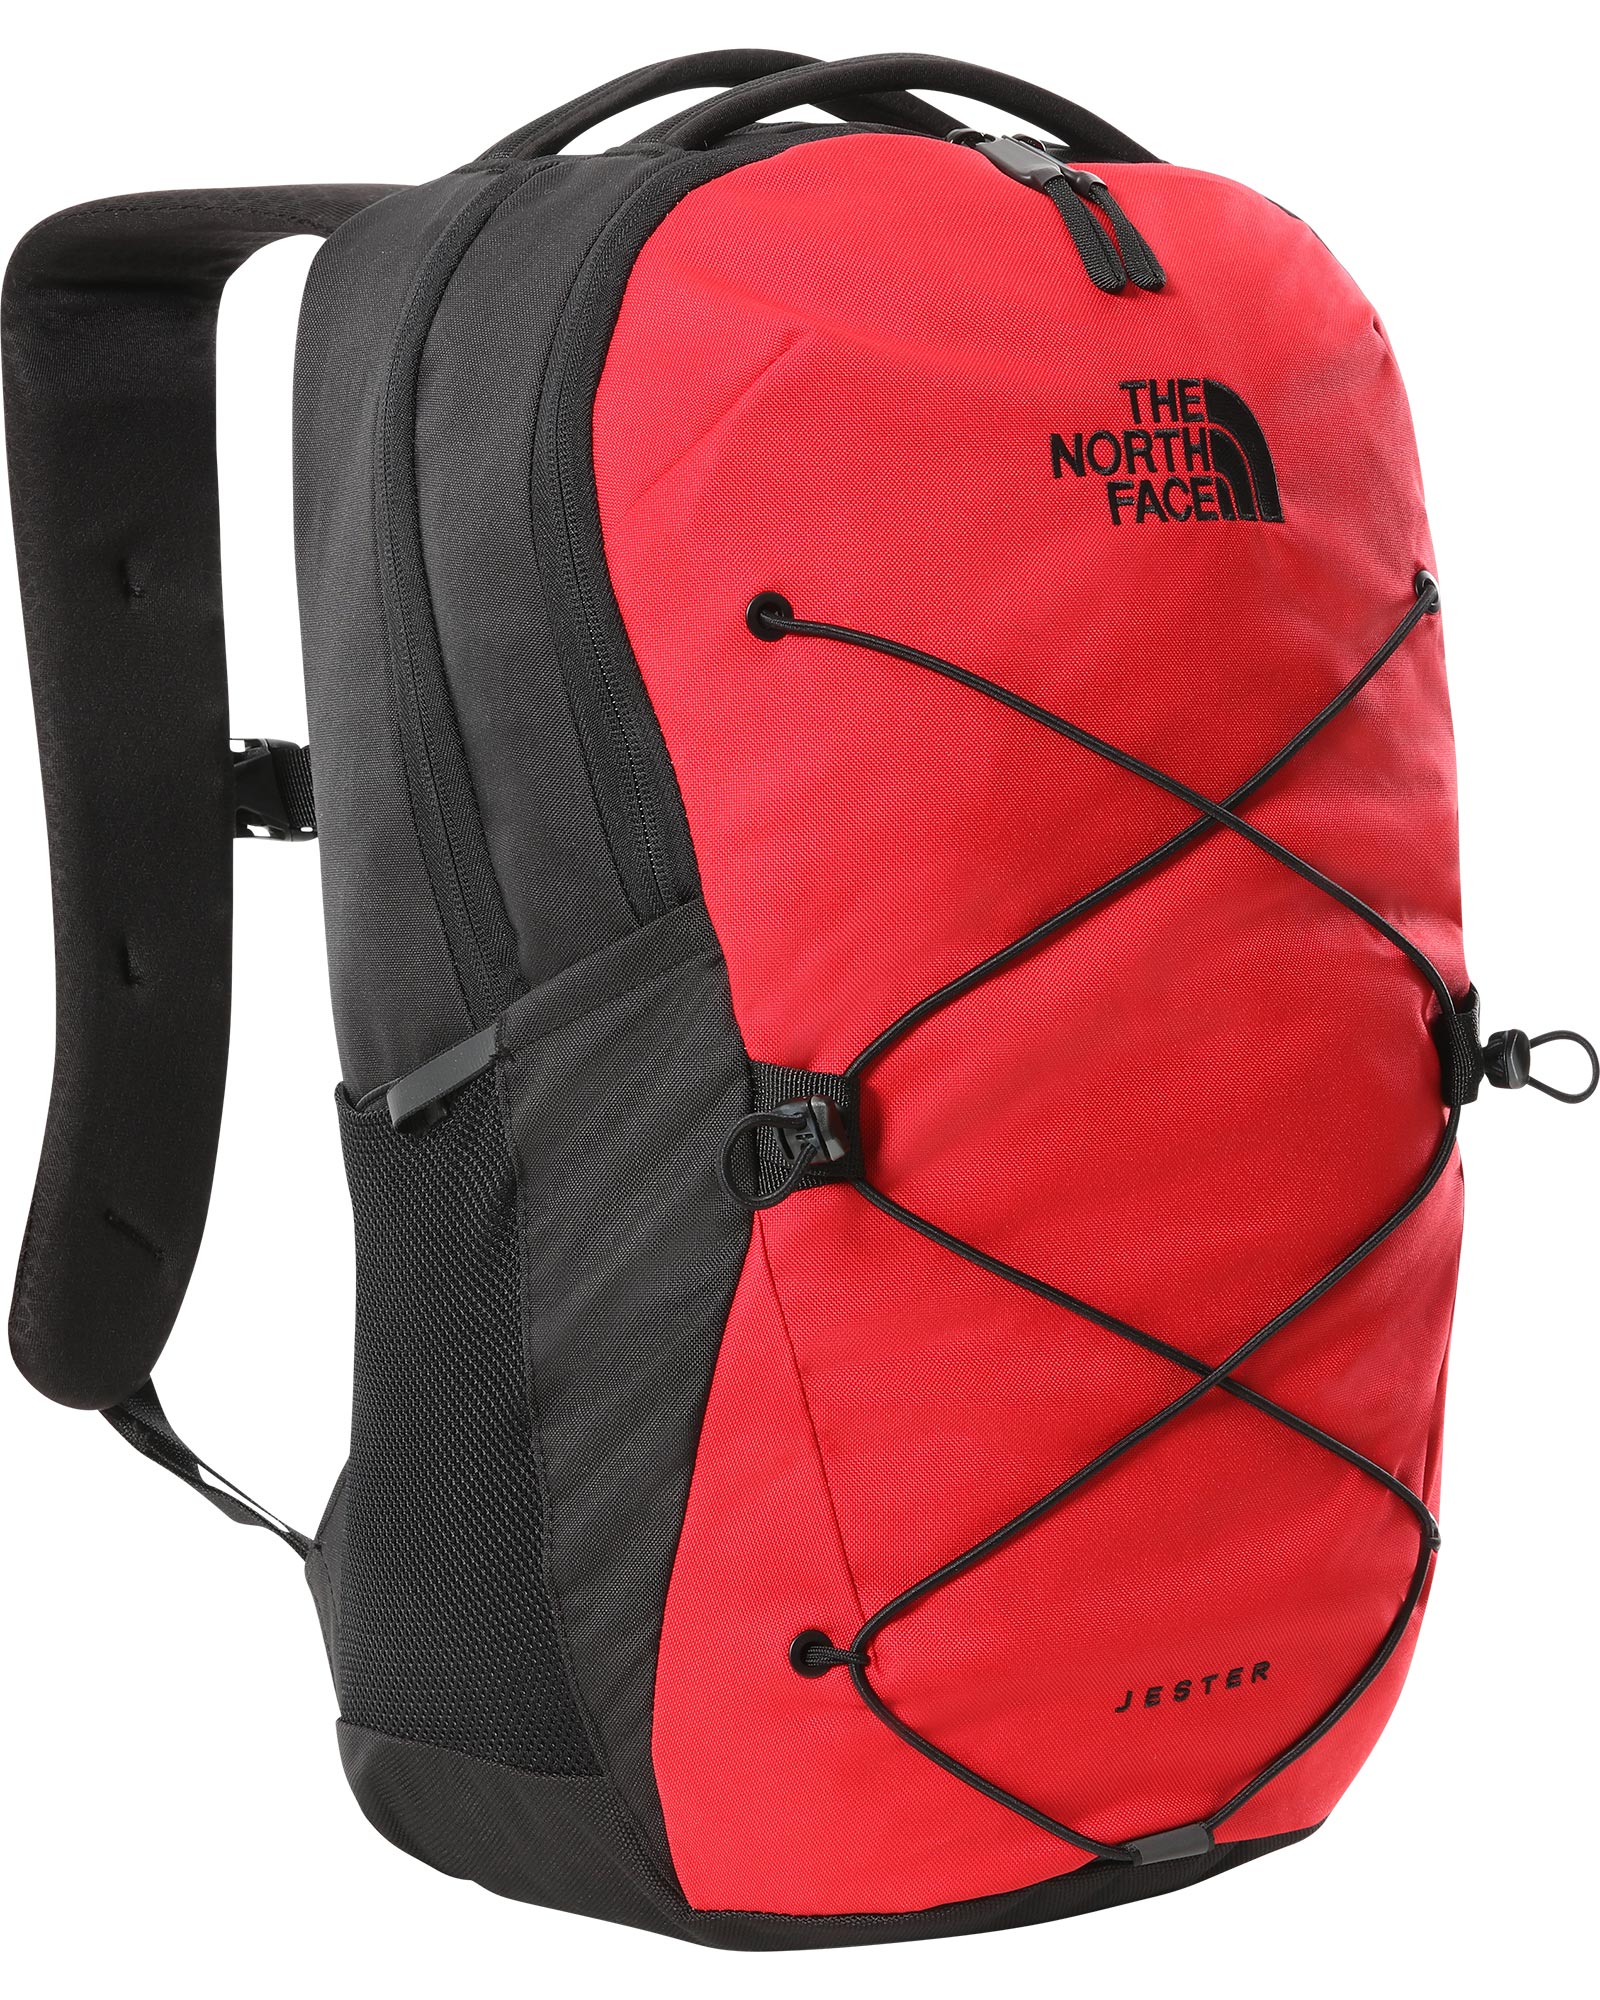 The North Face Jester Backpack - Asphalt Grey/Knockout Orange